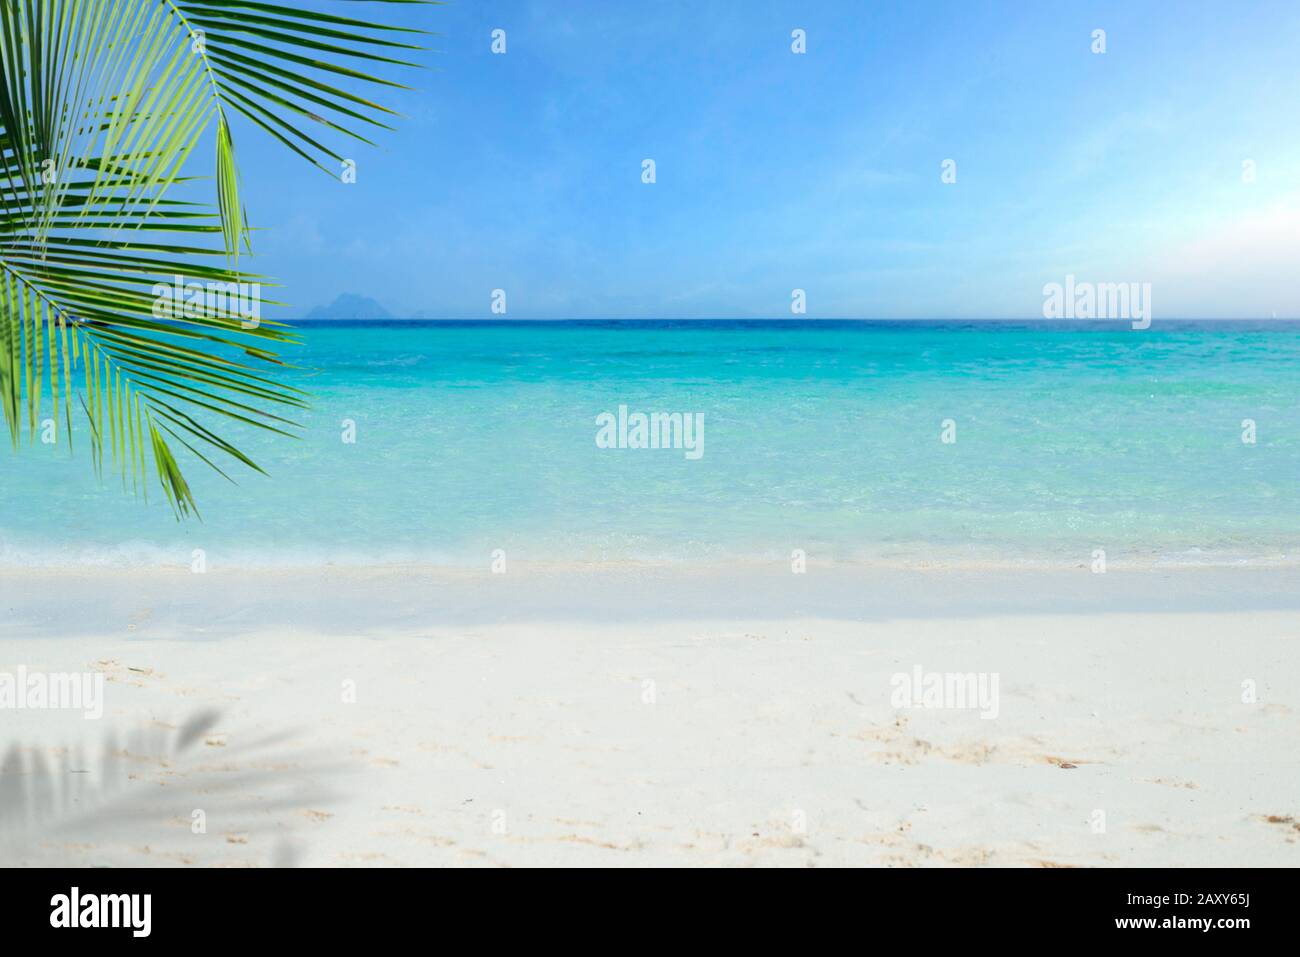 Plage tropicale avec palmier à noix de coco, mer et sable, vacances d'été fond. Voyage et vacances à la plage, espace libre pour le texte. Banque D'Images